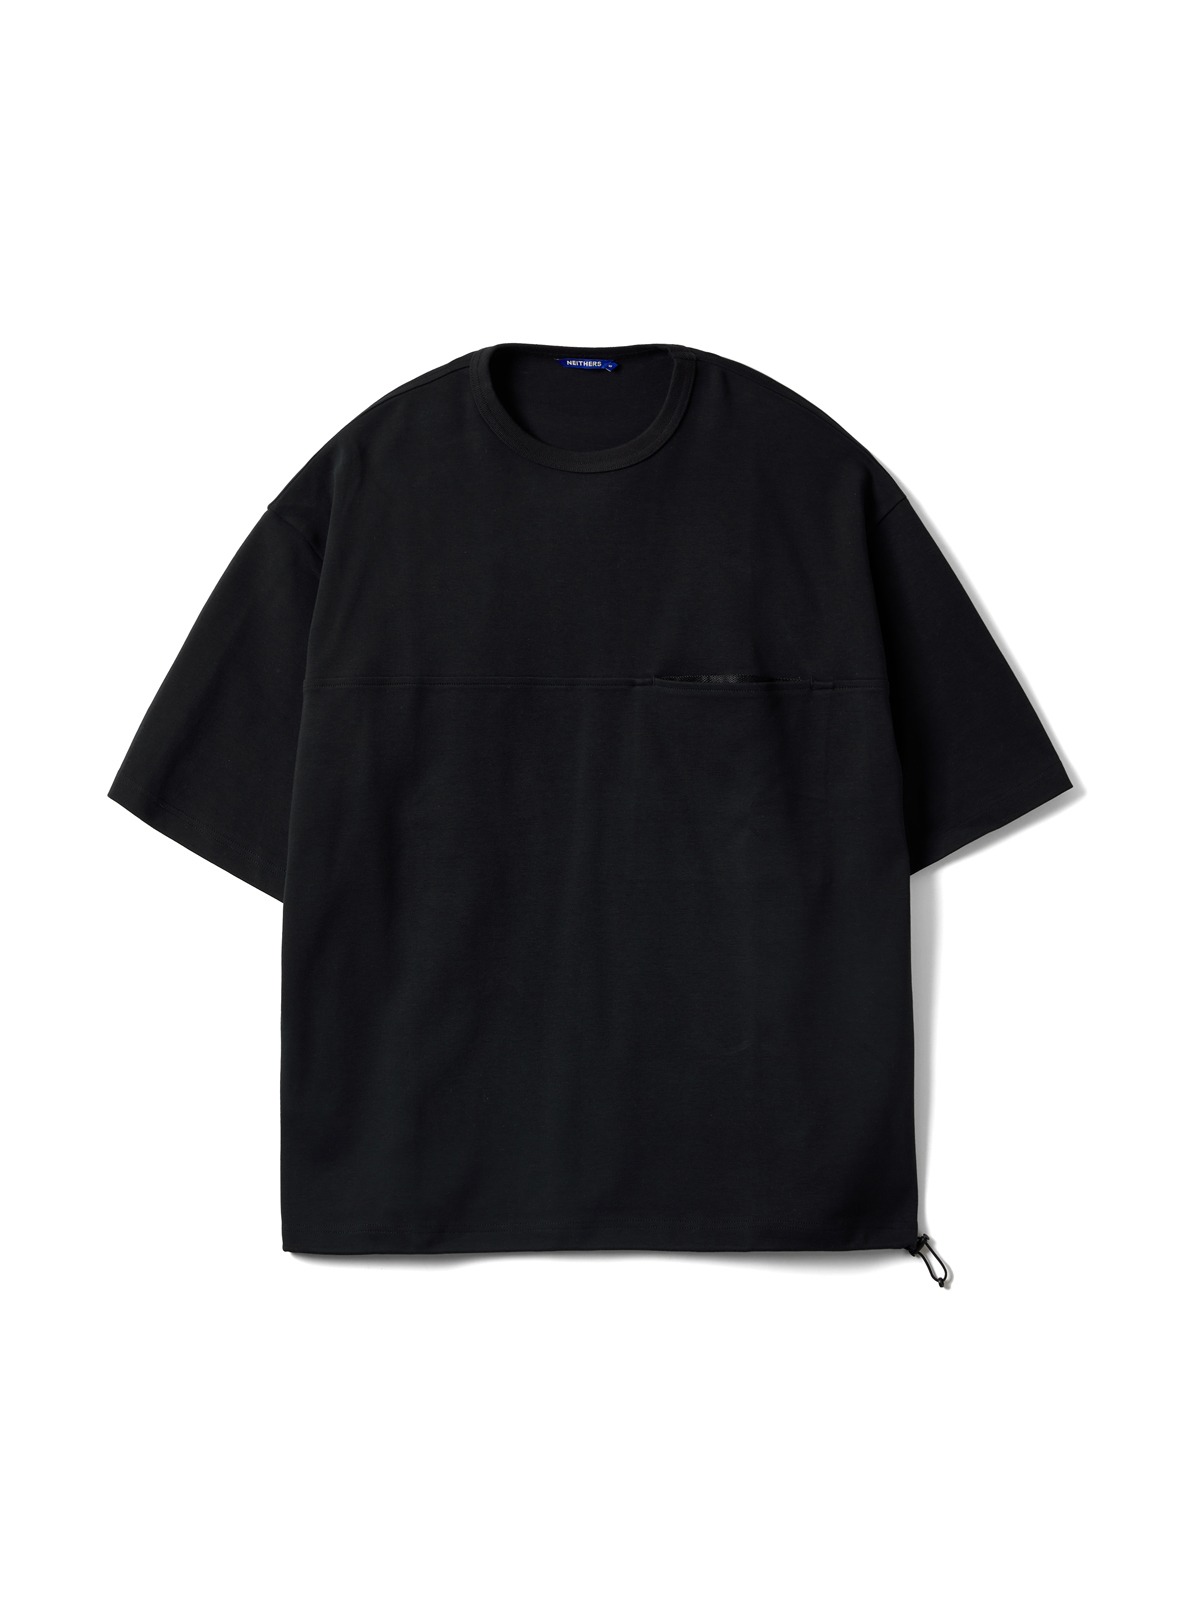 Camper S/S T-Shirt (Black)